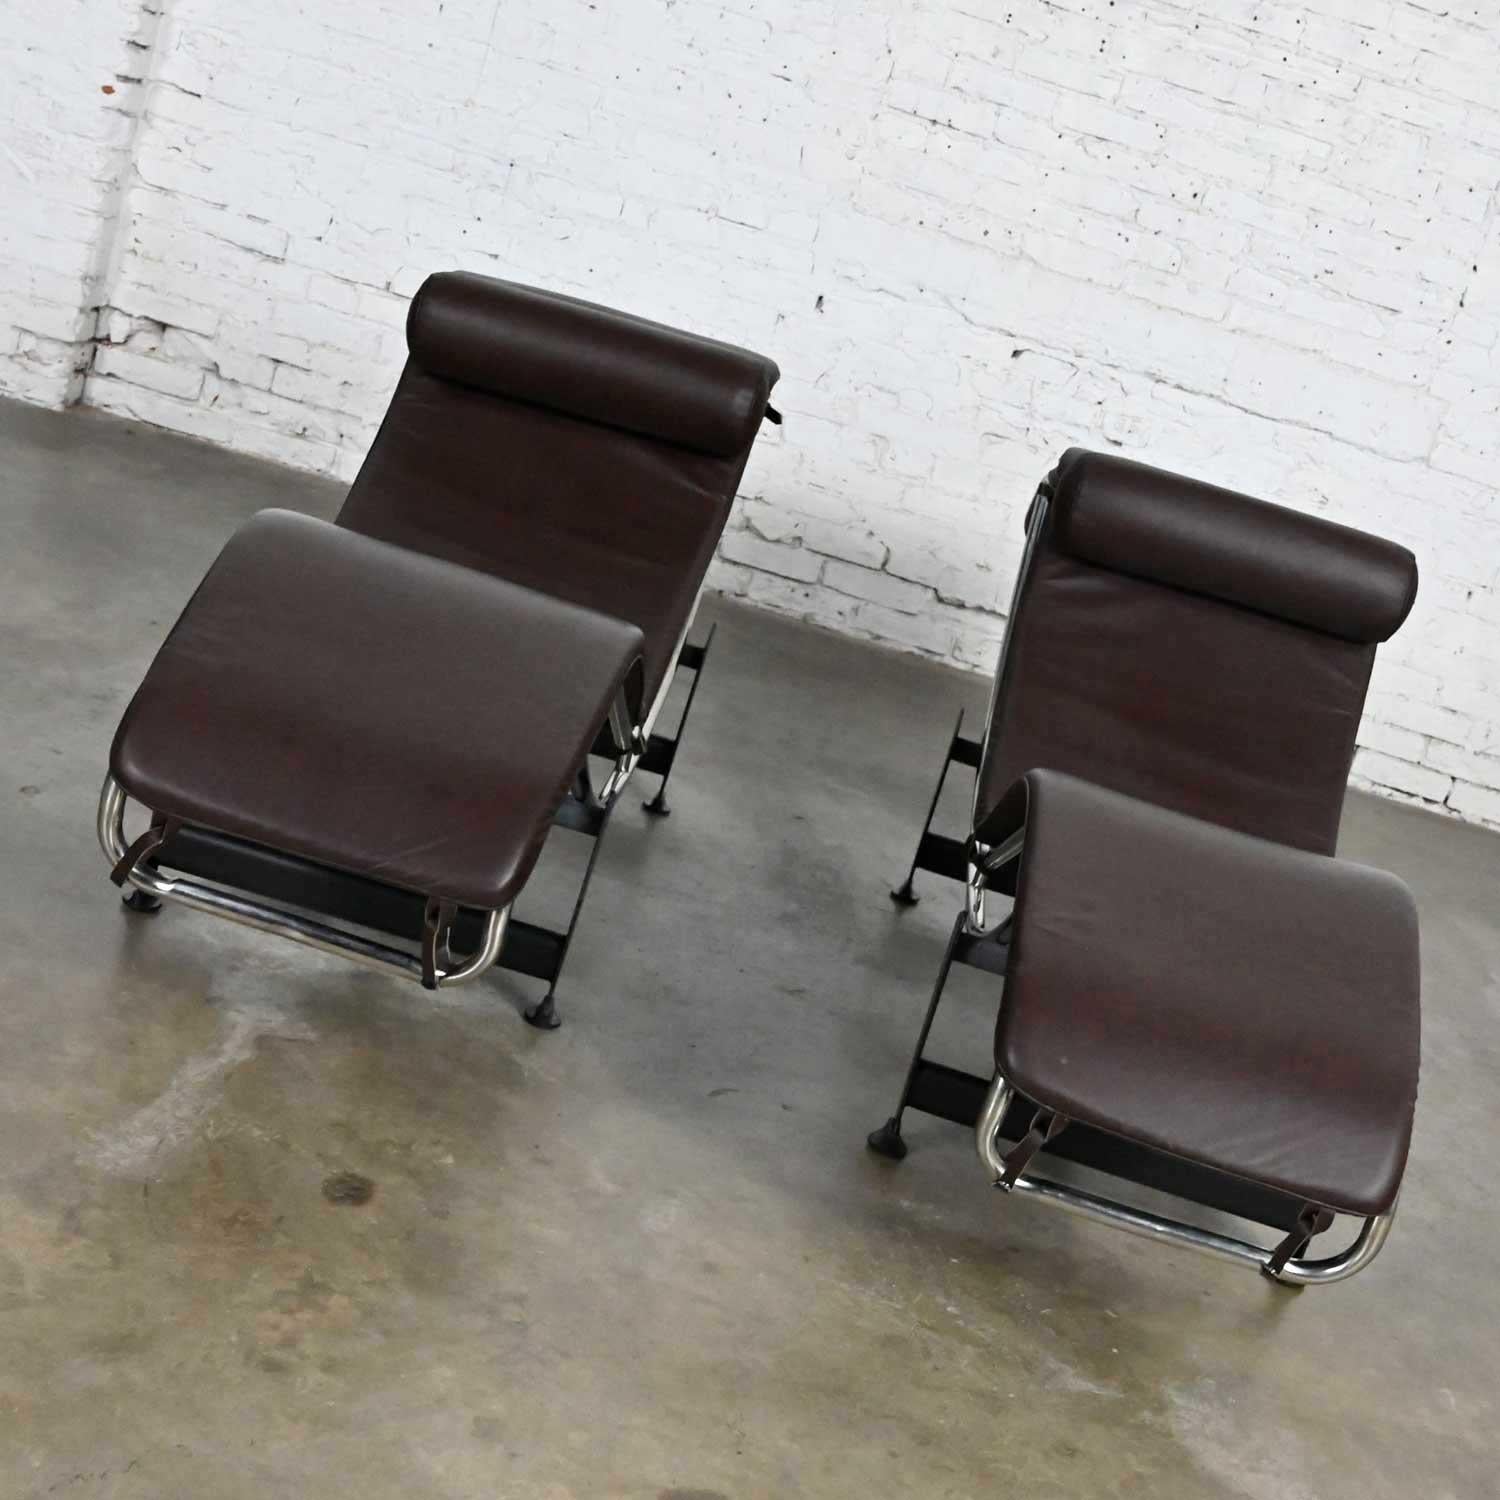 Fabelhaftes Paar Chaiselounge-Sessel mit verchromten Gestellen, schwarz lackierten Stahlfüßen und braunen Lederkissen im Stil von Le Corbusier LC4. Es handelt sich nicht um einen 